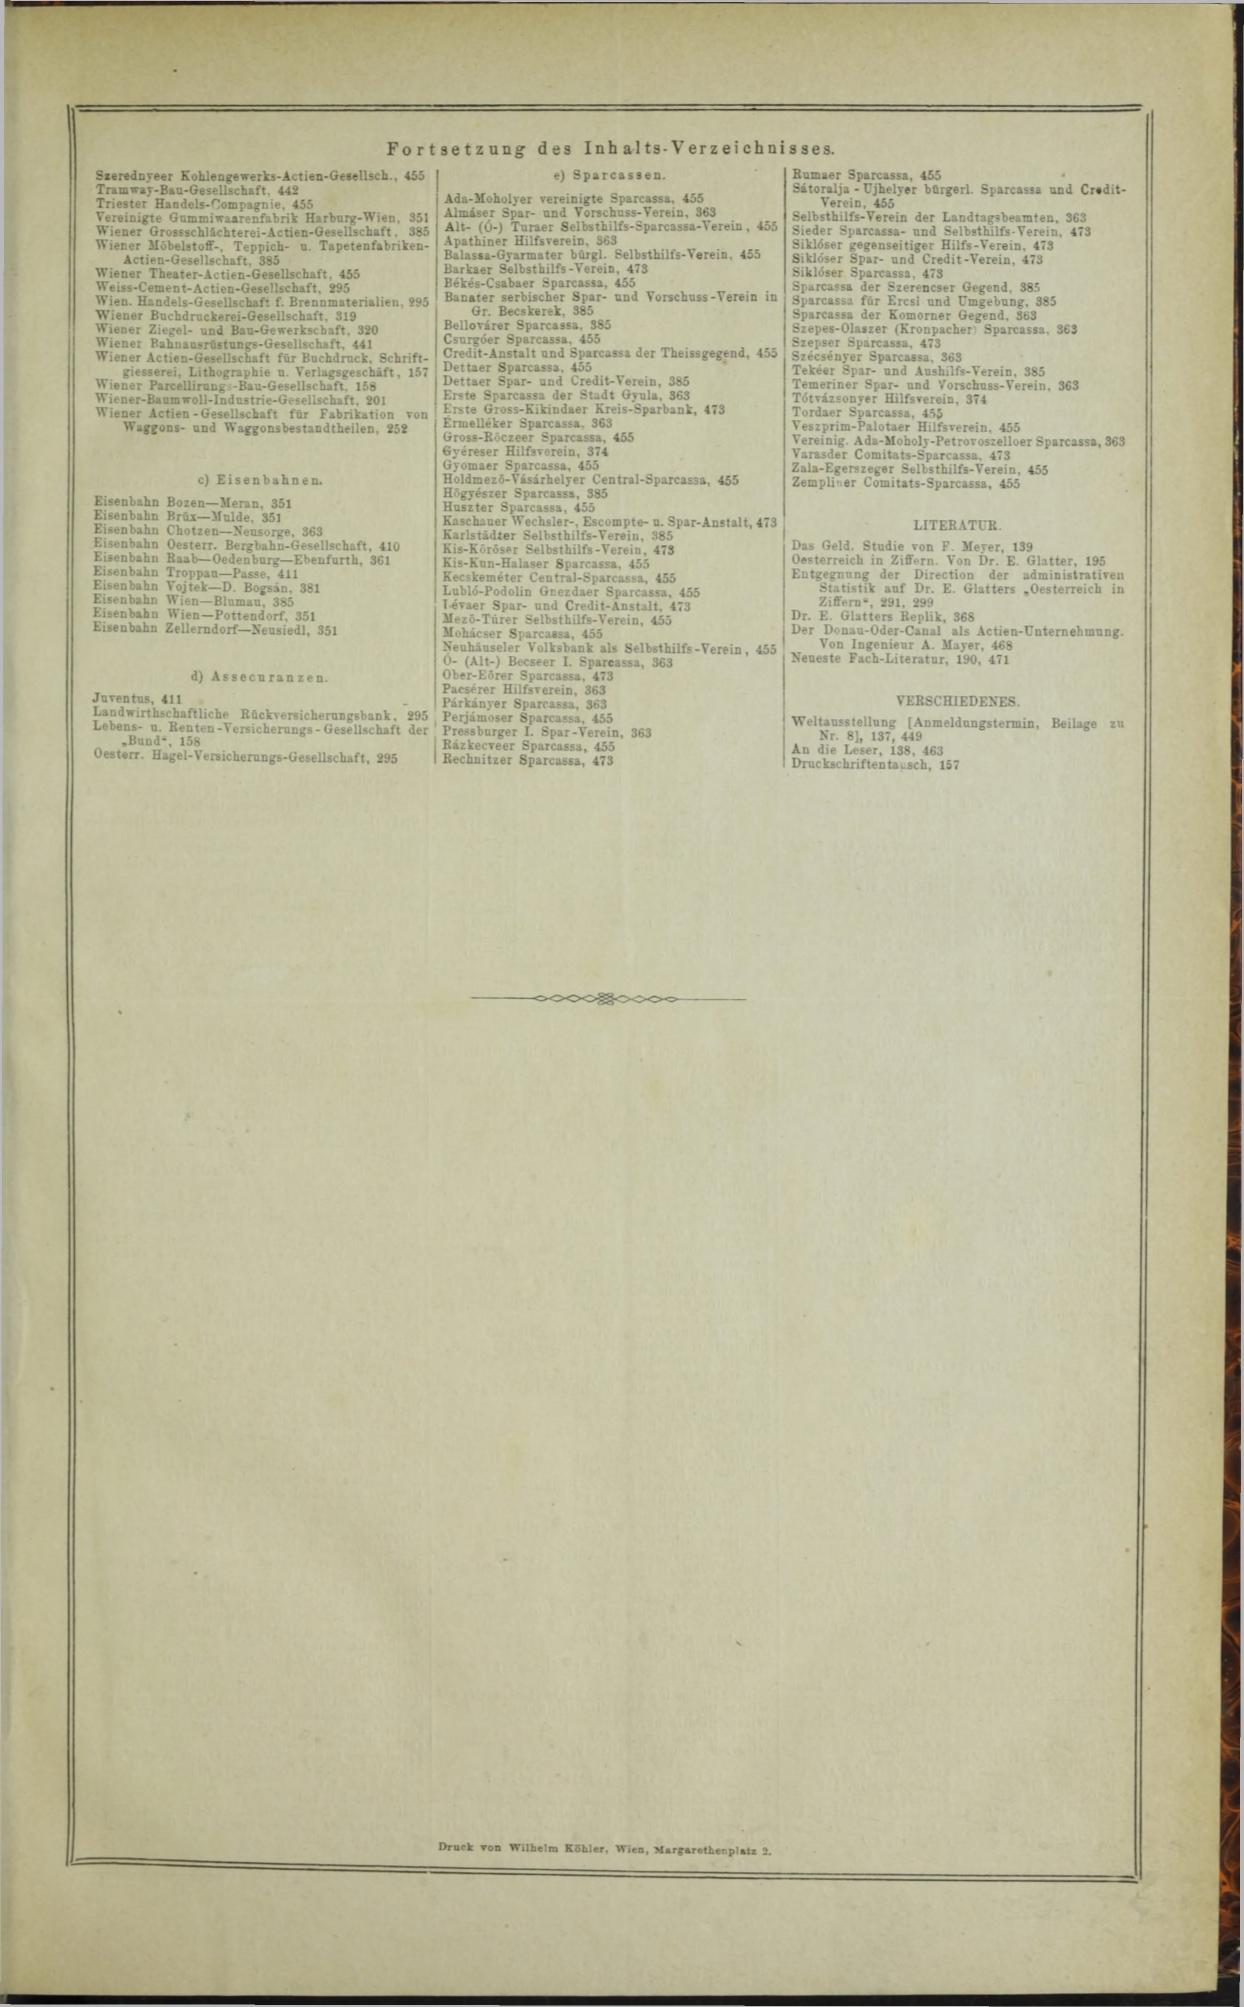 Der Tresor 10.07.1872 - Seite 30